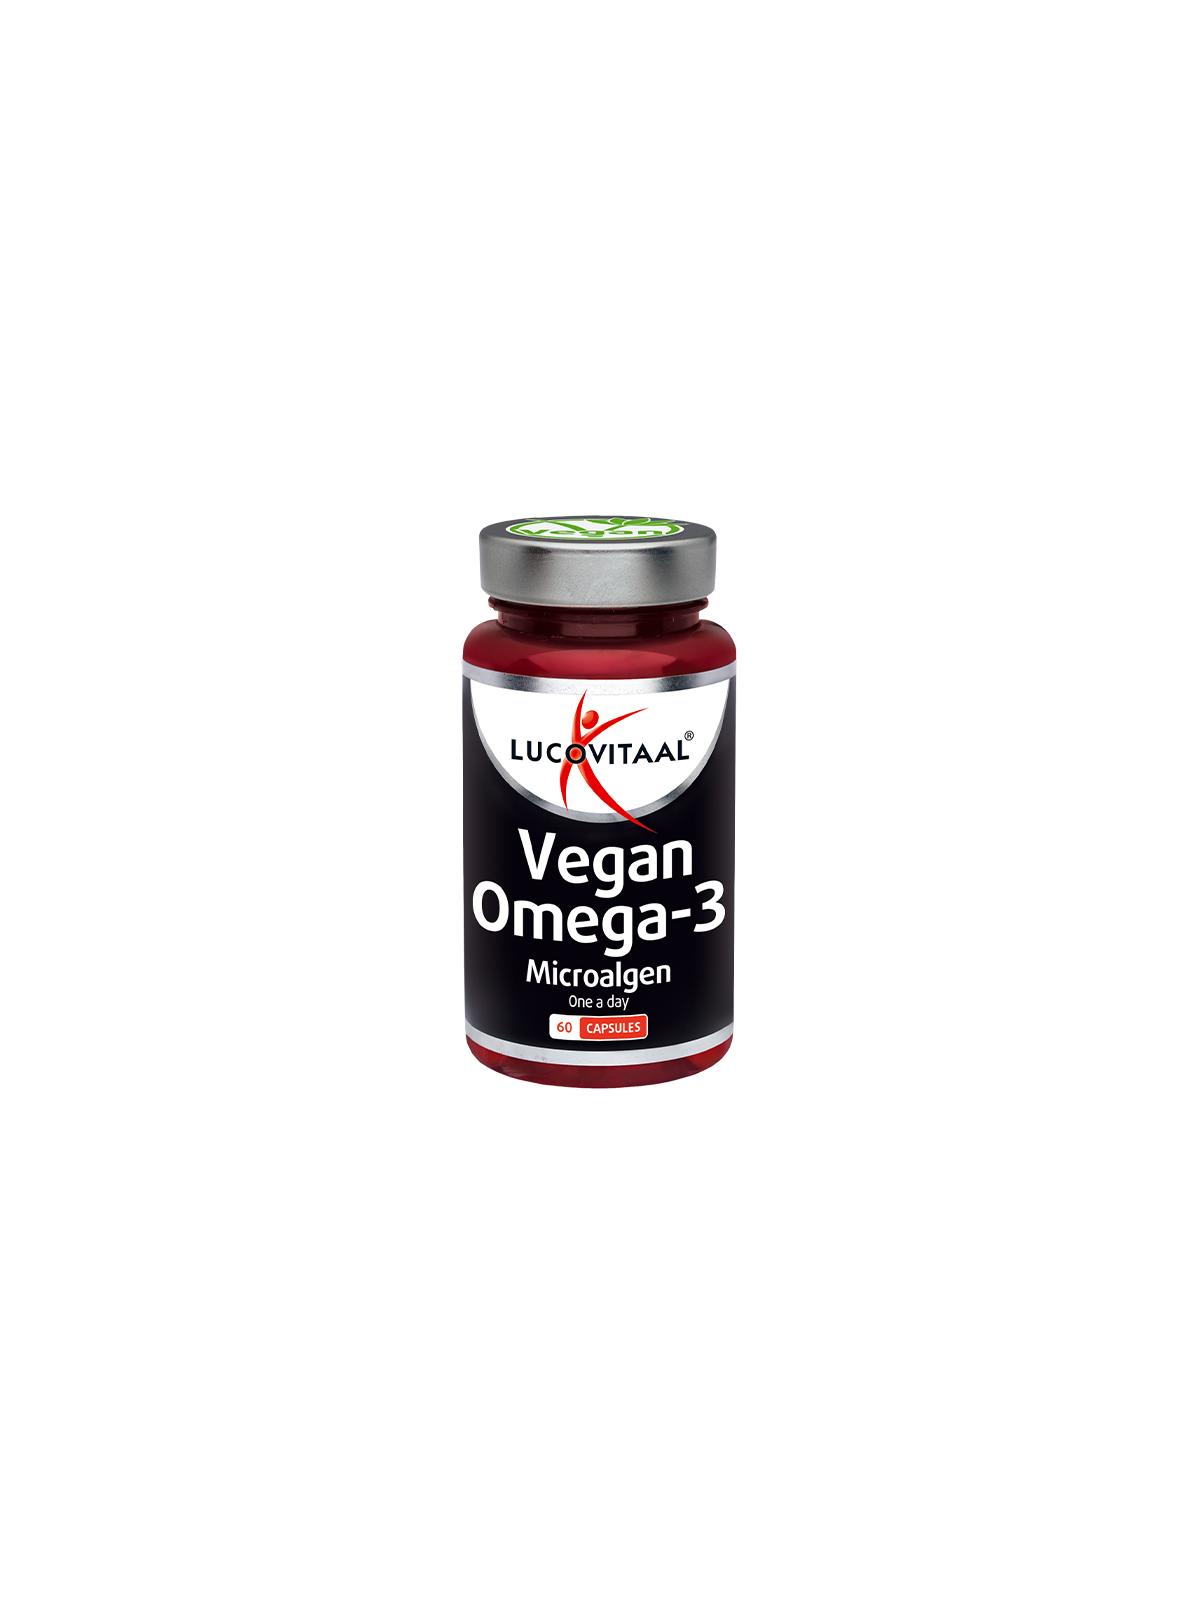 Vegan omega-3 microalgen